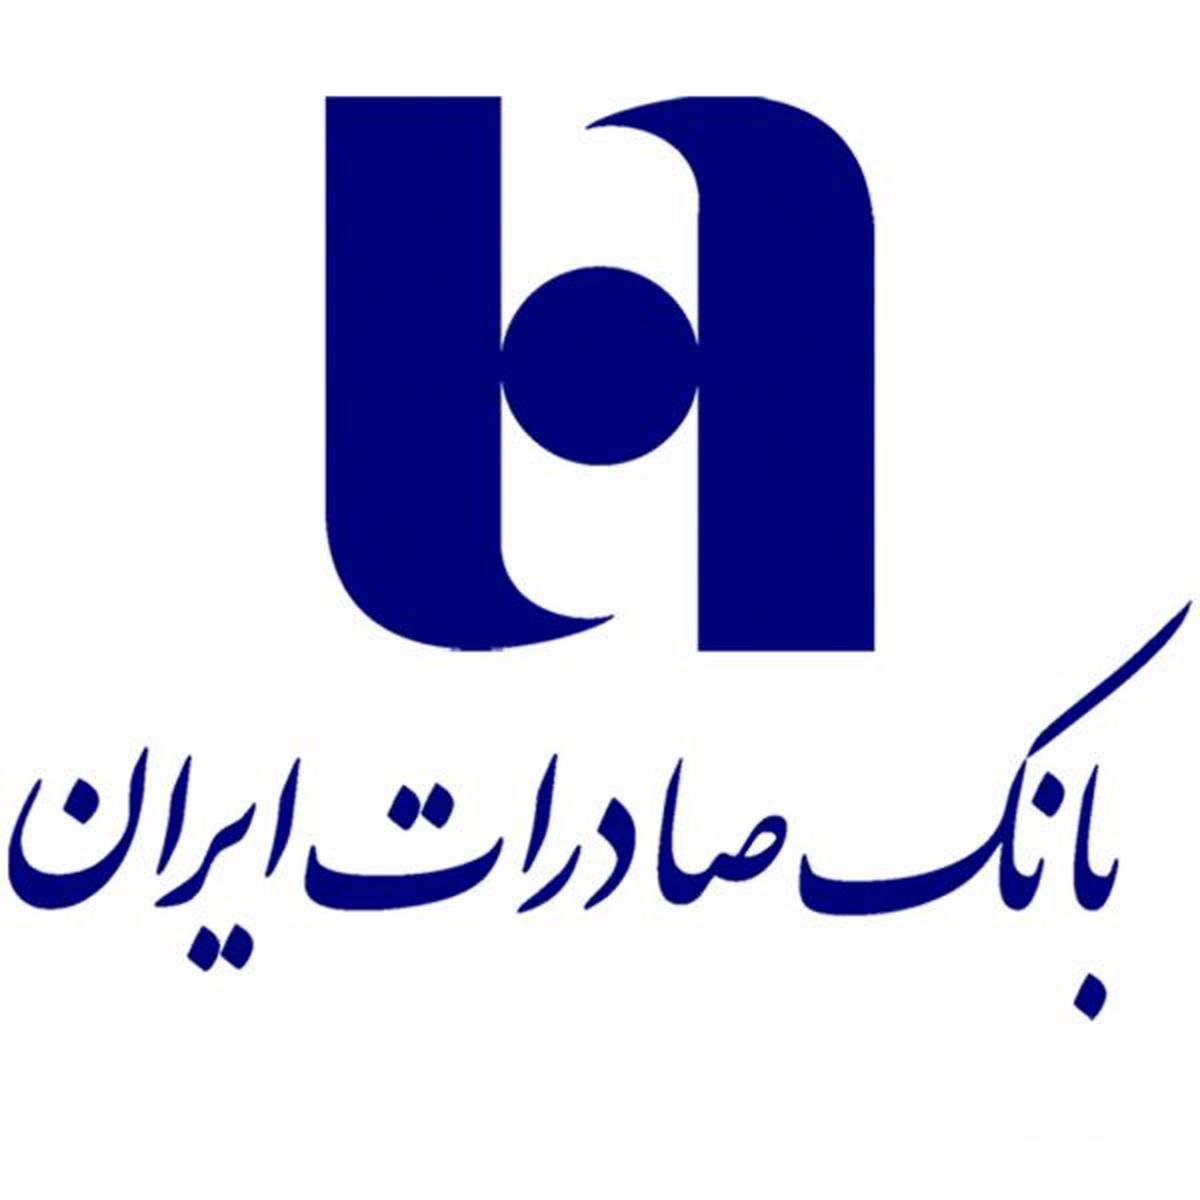 صندوق امانات بانک صادرات ایران خدمتی امن در سطح استانداردهای جهانی